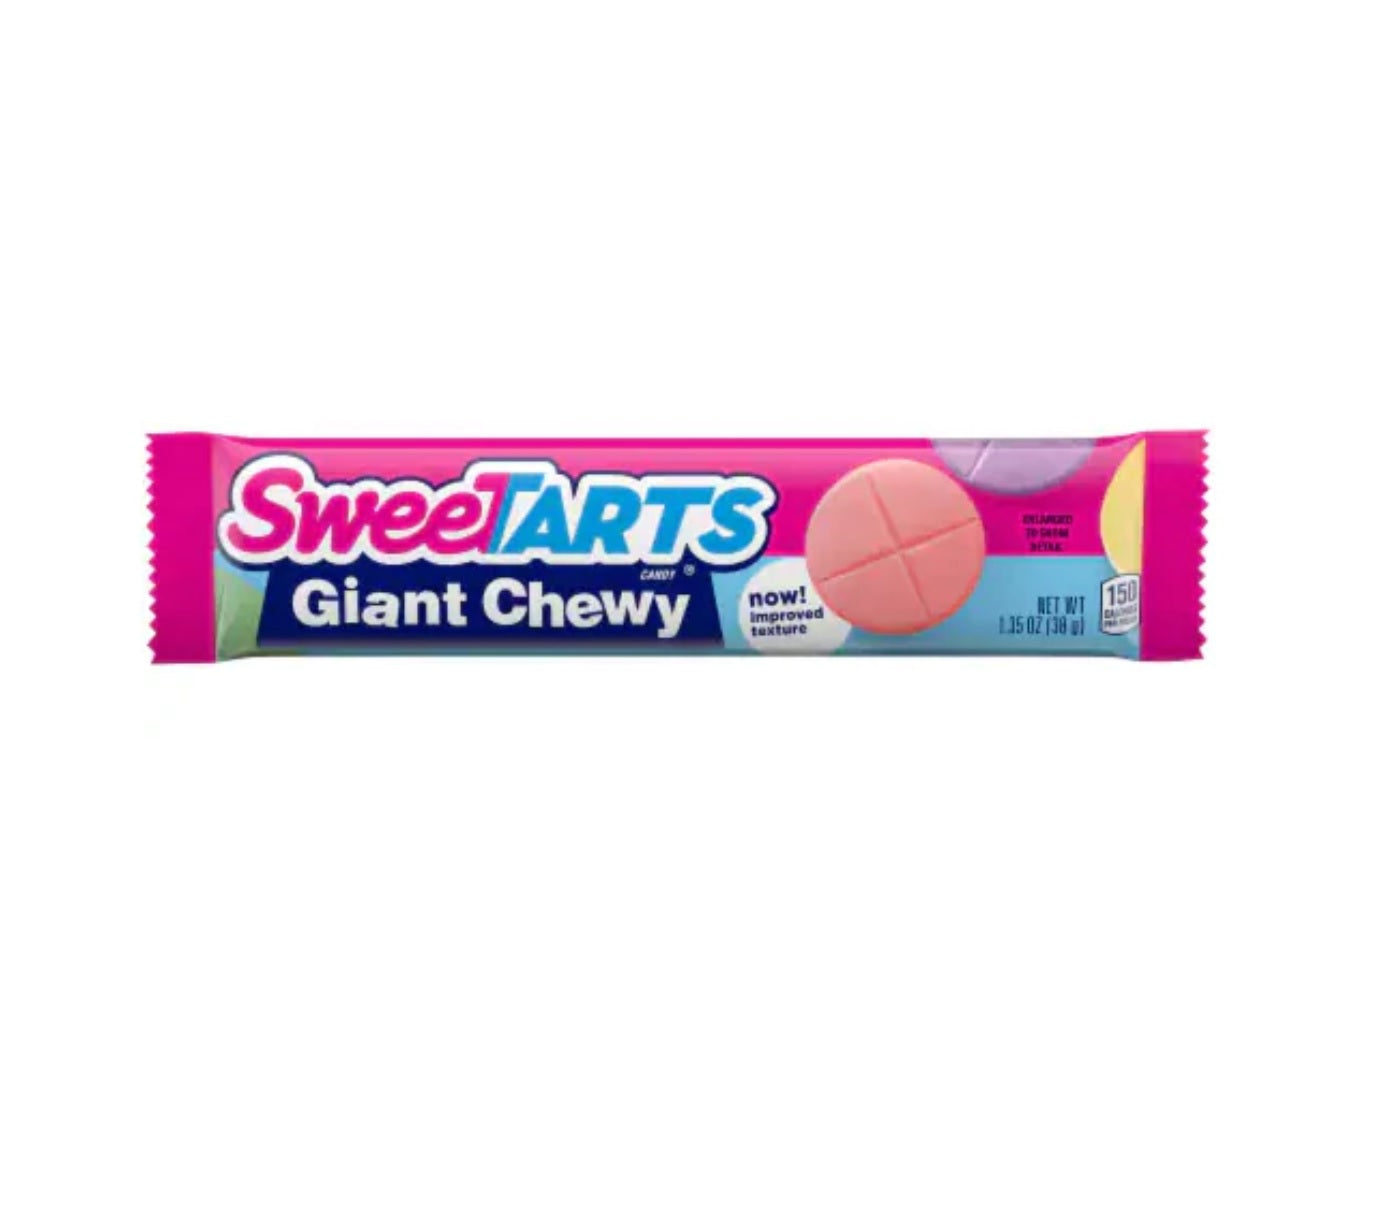 Sweetarts Giant Chewy 38g – Box of 36